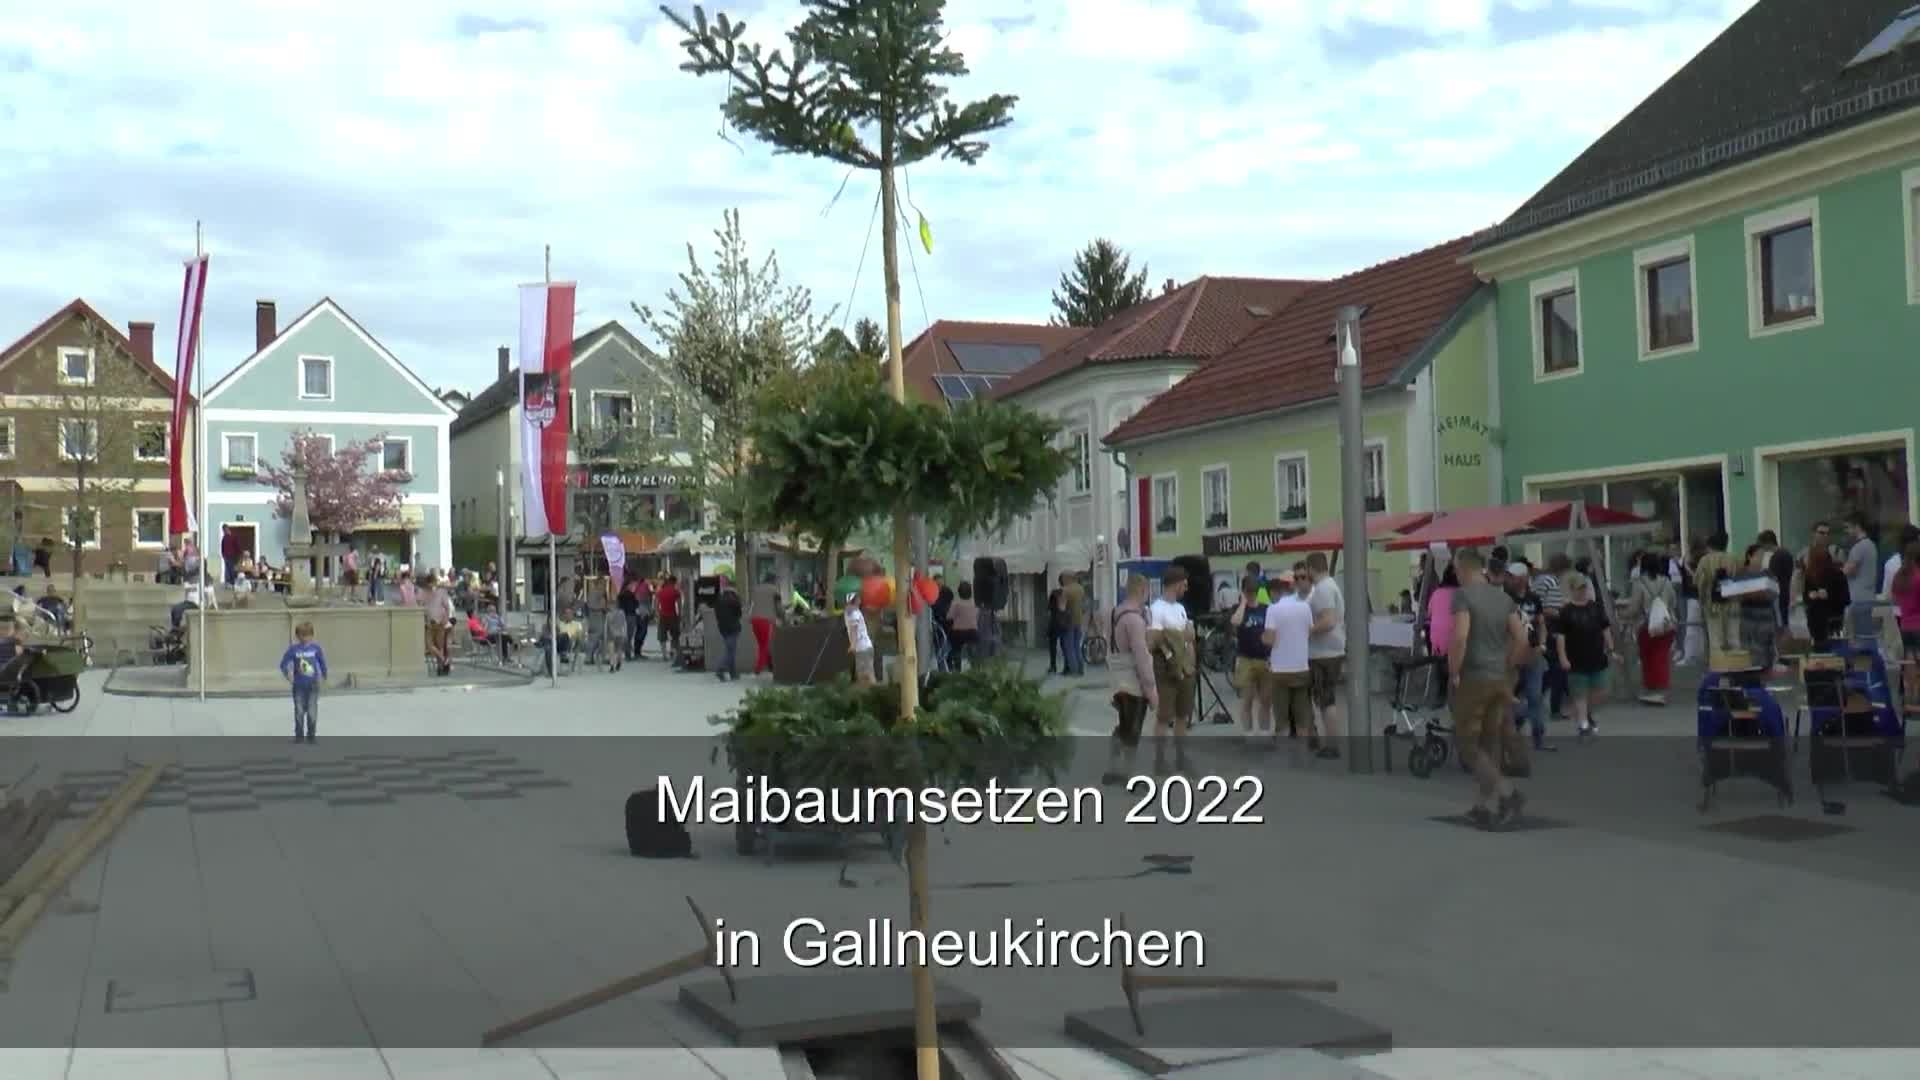 Maibaumsetzen 2022 in Gallneukirchen